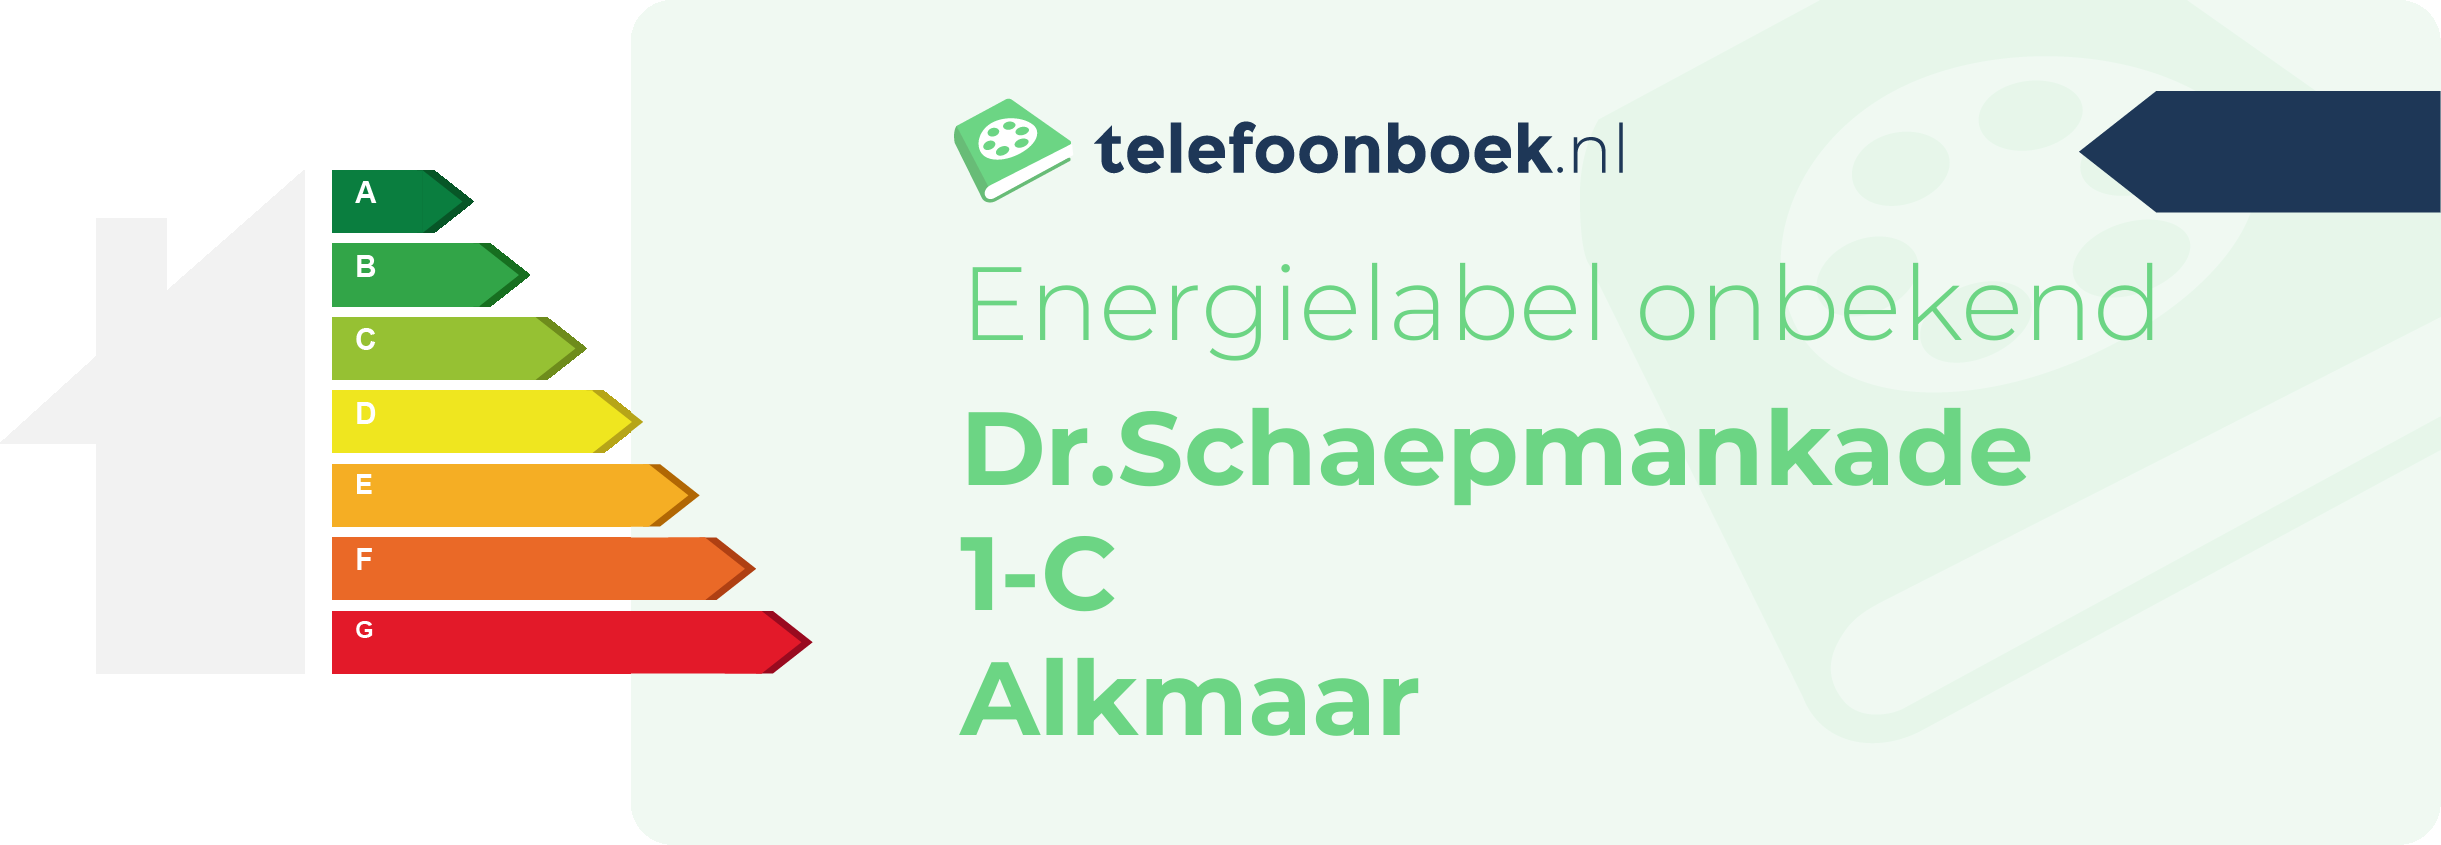 Energielabel Dr.Schaepmankade 1-C Alkmaar